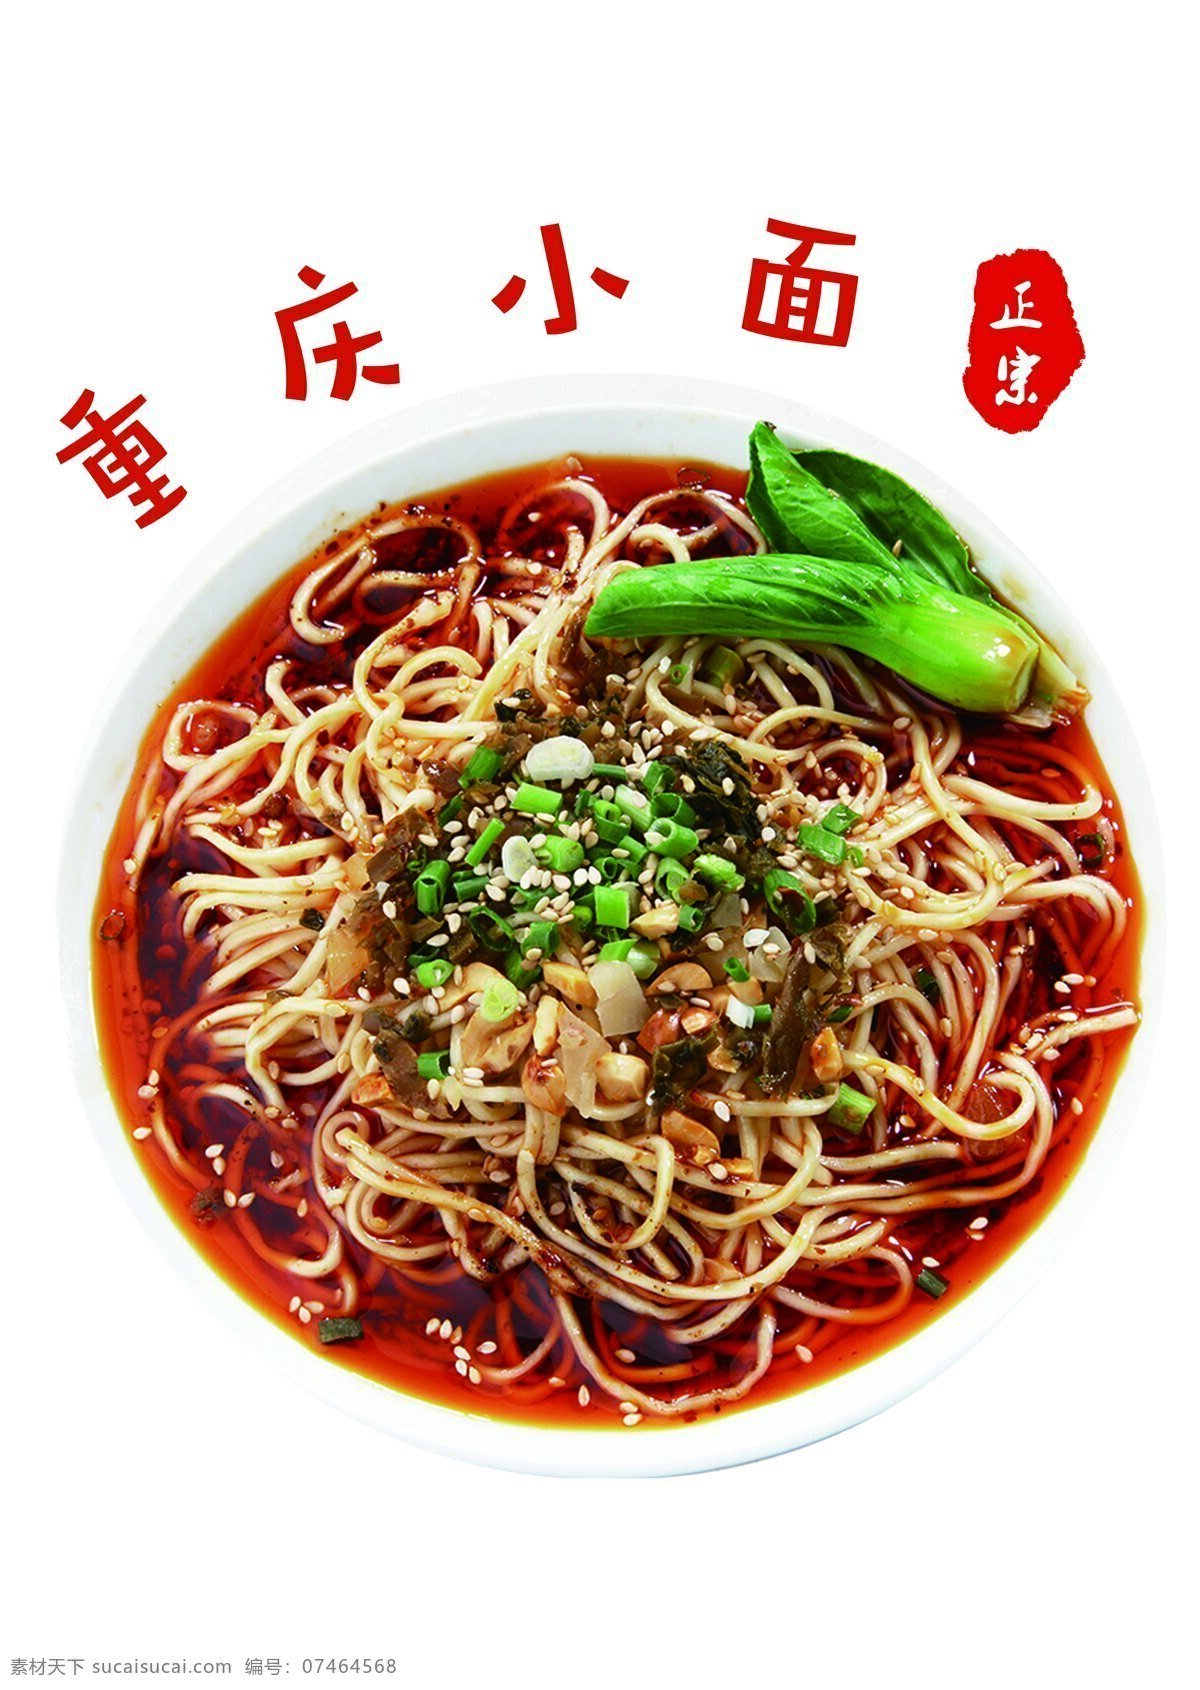 重庆小面 餐饮 美食 招牌面 餐饮图片 菜单菜谱